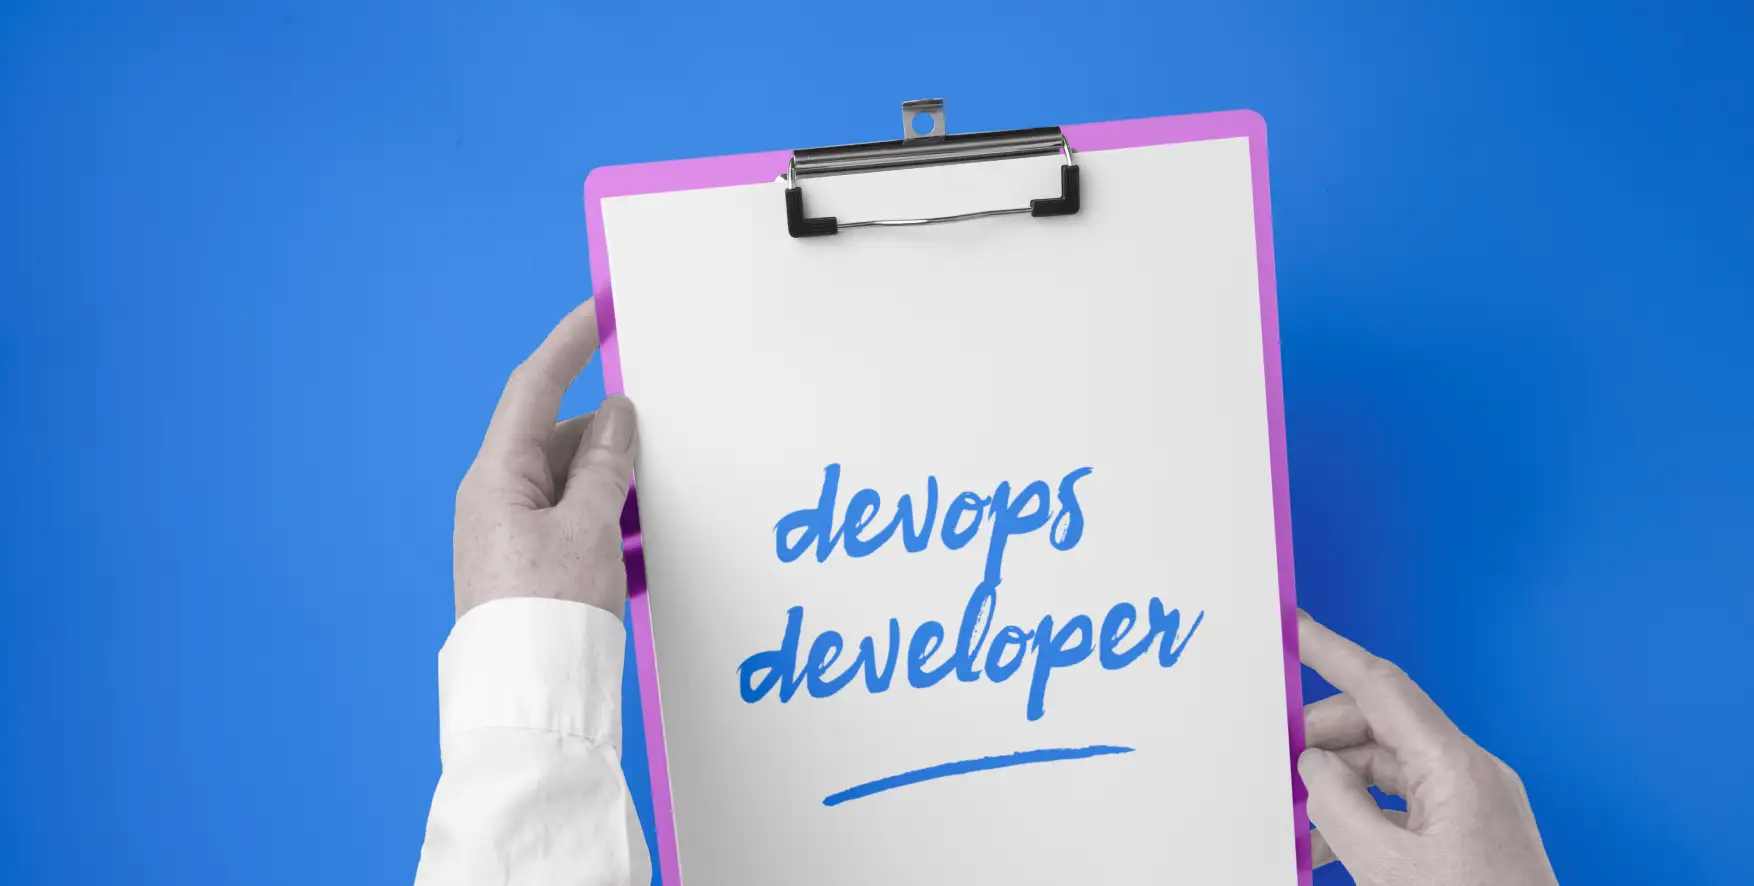 devops developer written on a piece of paper in a clipboard